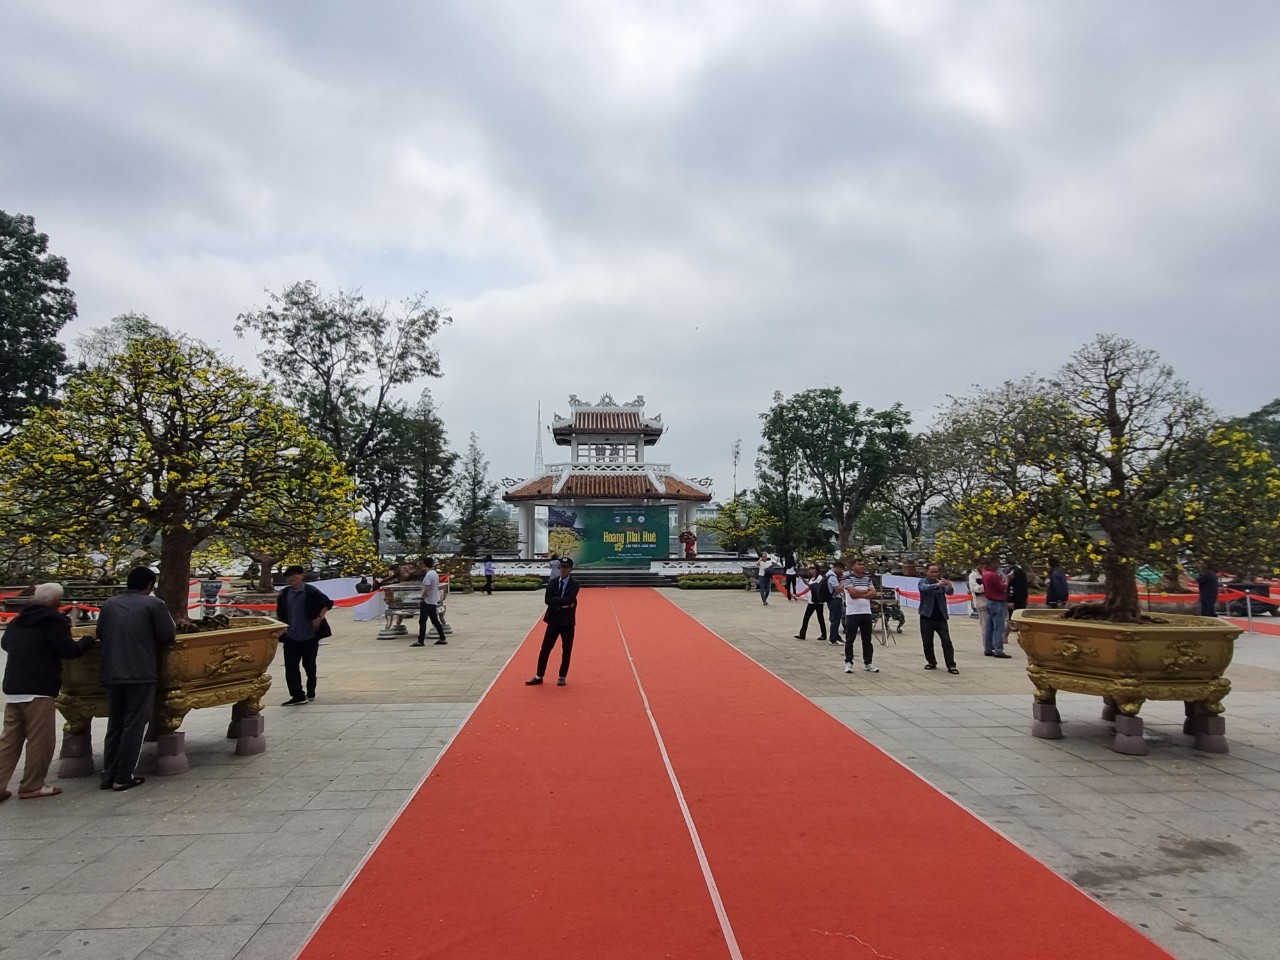 Cuộc thi “Hoàng mai Huế - Kiệt tác mùa Xuân” Diễn ra từ 28/1 – 7/2 tại công viên Thương Bạc (thành phố Huế).